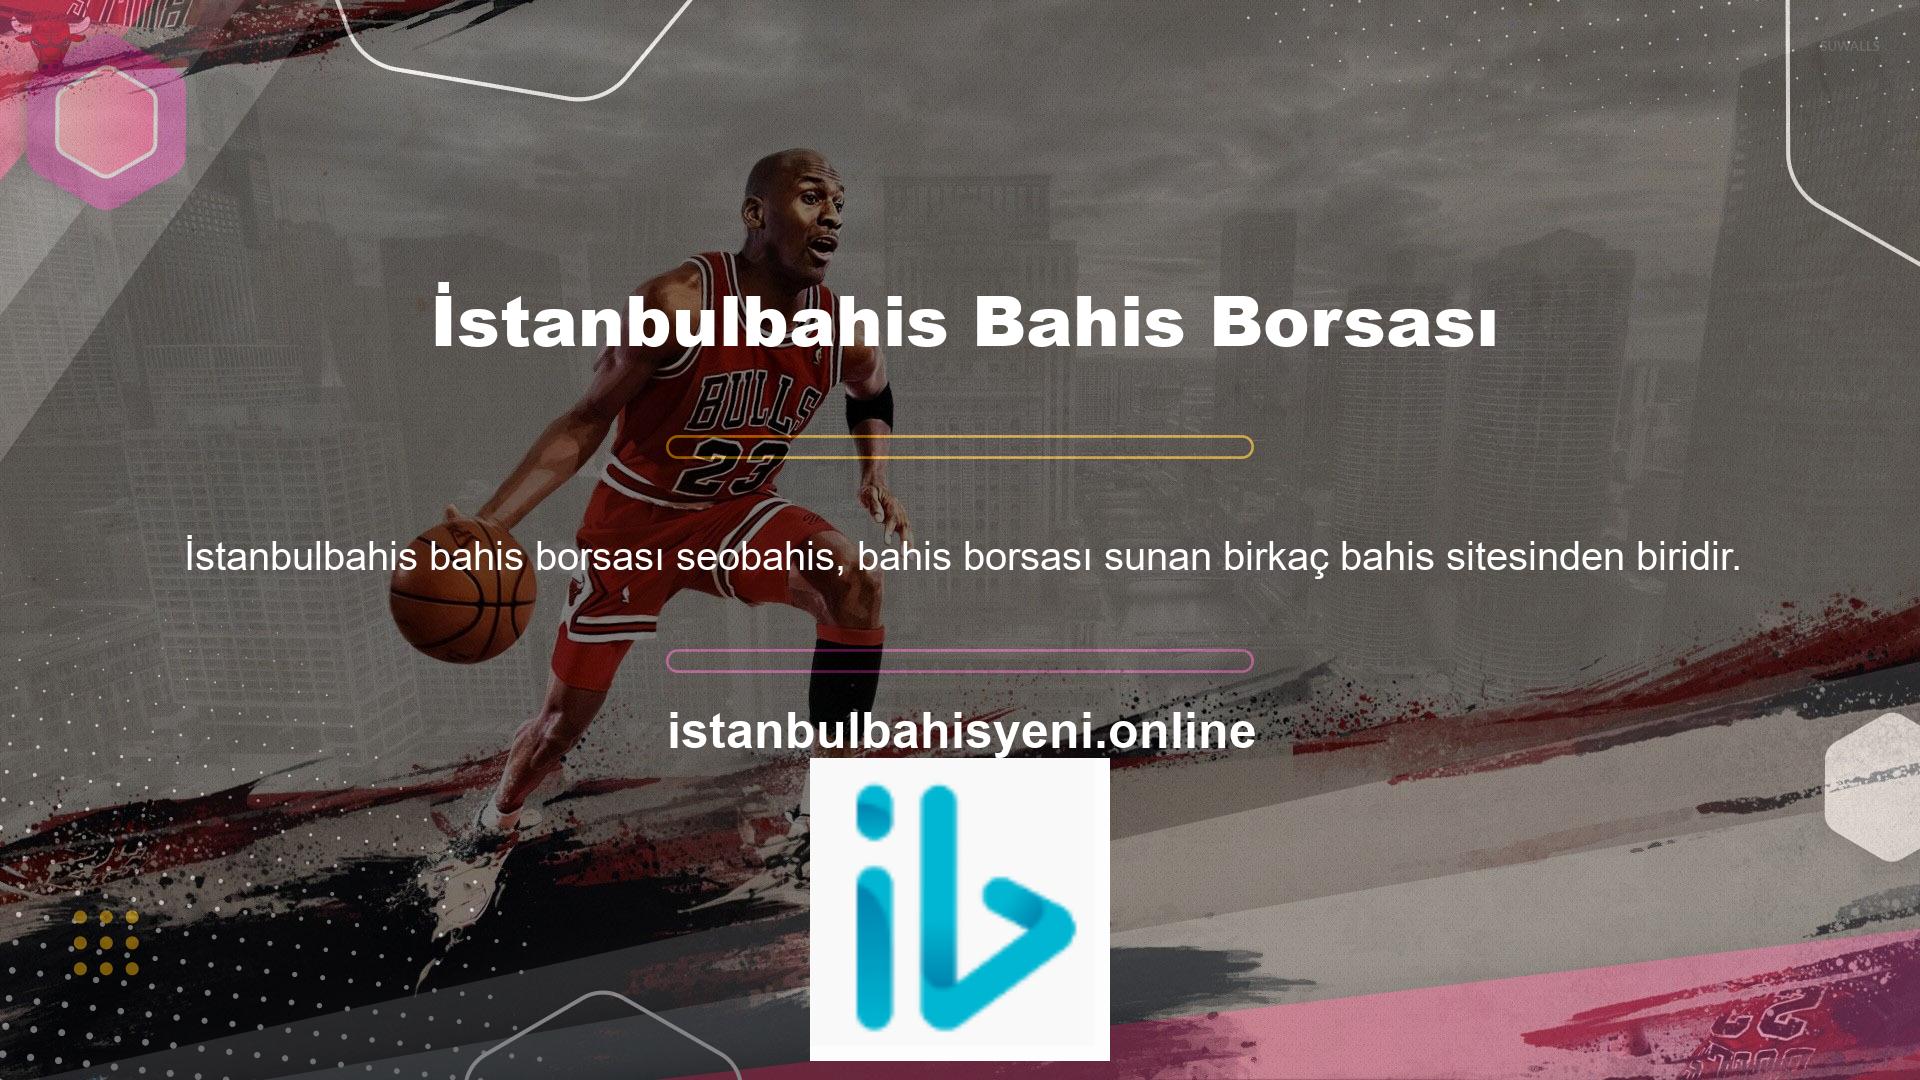 Burada diğer İstanbulbahis müşterilerinin yaptığı basketbol bahislerini bulabilirsiniz